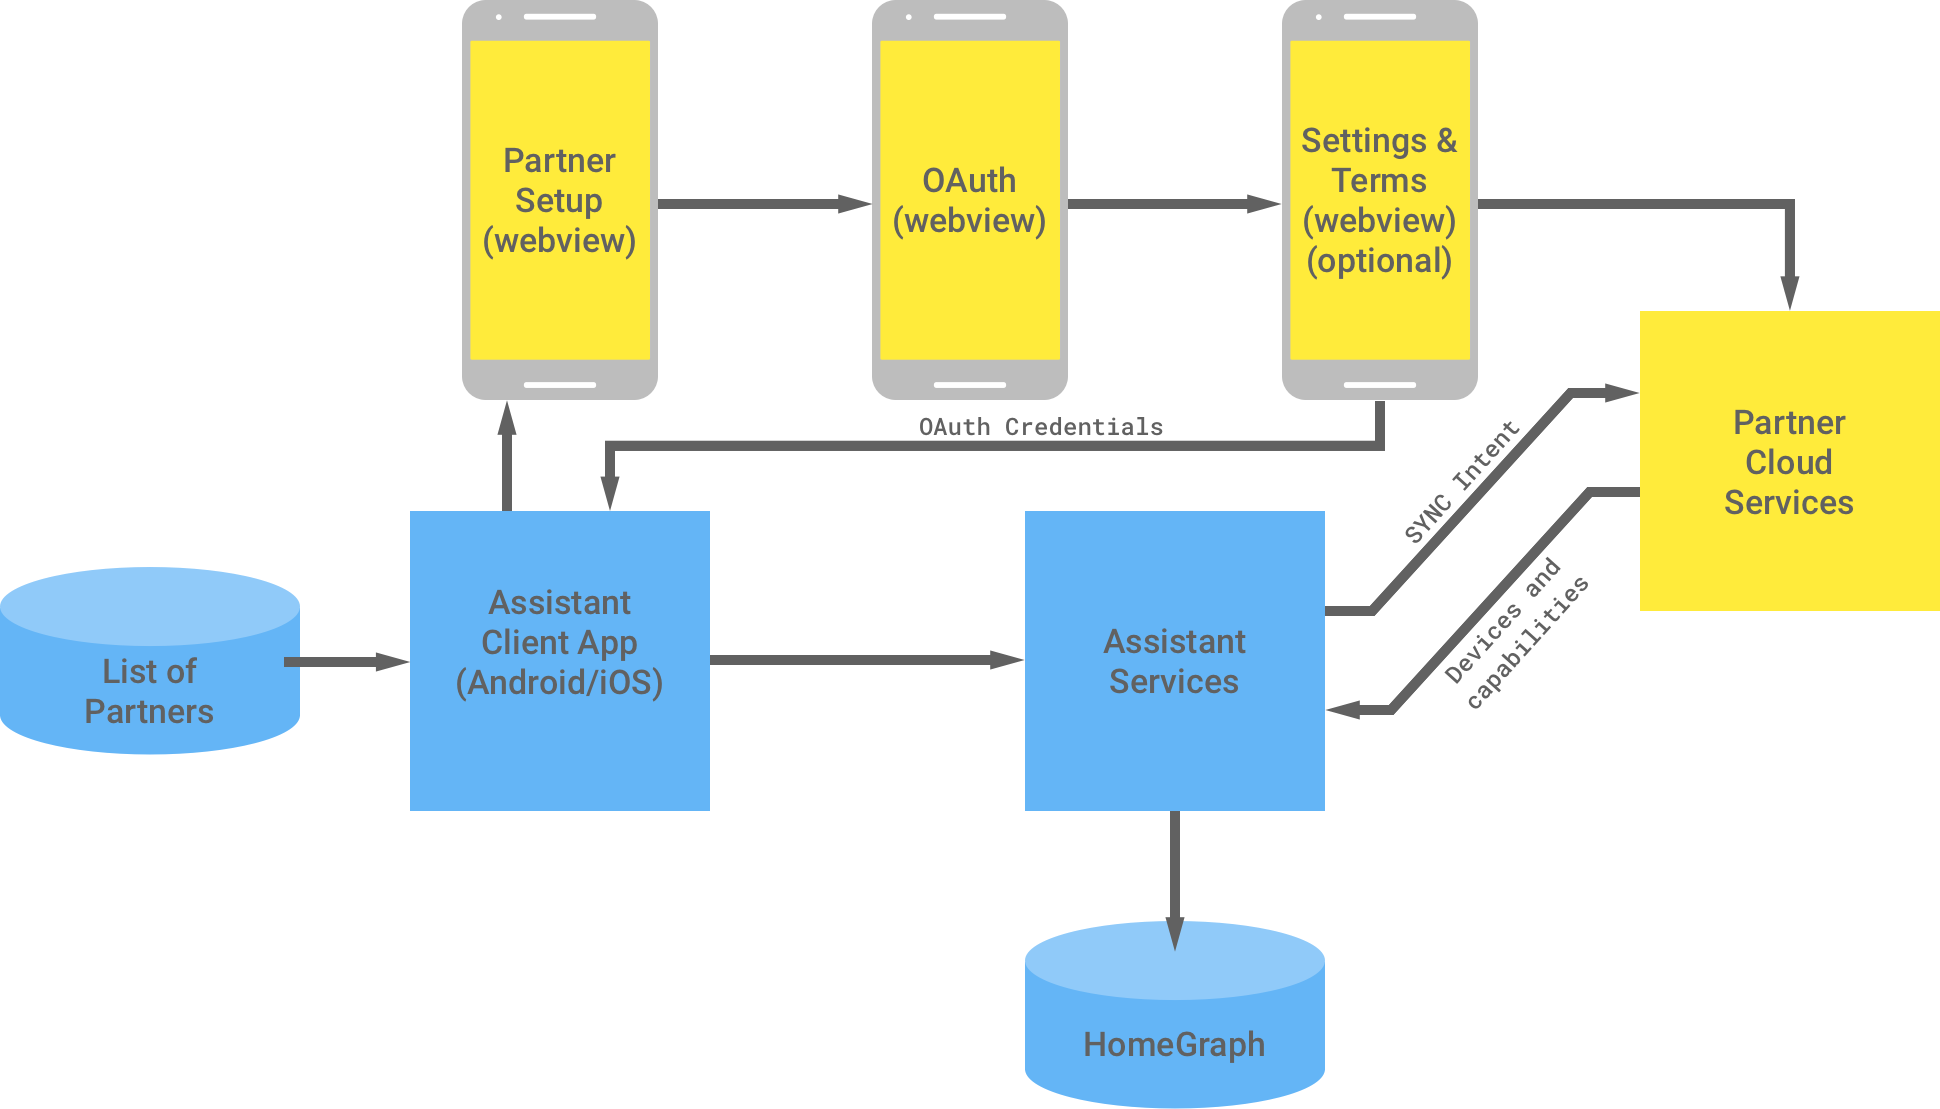 รูปนี้แสดงการโต้ตอบระหว่างโครงสร้างพื้นฐานของ Google และโครงสร้างพื้นฐานของพาร์ทเนอร์ จากโครงสร้างพื้นฐานของ Google จะมีรายชื่อพาร์ทเนอร์ที่พร้อมใช้งานสําหรับแอปไคลเอ็นต์ Assistant ซึ่งจะส่งไปยังโครงสร้างพื้นฐานของพาร์ทเนอร์เพื่อดําเนินการตรวจสอบสิทธิ์ OAuth ให้เสร็จสมบูรณ์ การตรวจสอบสิทธิ์ OAuth ทางฝั่งพาร์ทเนอร์คือ WebView สําหรับการตั้งค่าพาร์ทเนอร์, WebView ของ OAuth, การตั้งค่าและข้อกําหนดที่ไม่บังคับ และบริการระบบคลาวด์ของพาร์ทเนอร์ โครงสร้างพื้นฐานของพาร์ทเนอร์ จากนั้นจะส่งข้อมูลเข้าสู่ระบบ OAuth ไปยังแอปไคลเอ็นต์ Assistant บริการระบบคลาวด์ของพาร์ทเนอร์จะส่งอุปกรณ์และความสามารถที่พร้อมใช้งานไปยังบริการ Assistant ซึ่งจะจัดเก็บข้อมูลไว้ใน Home Graph